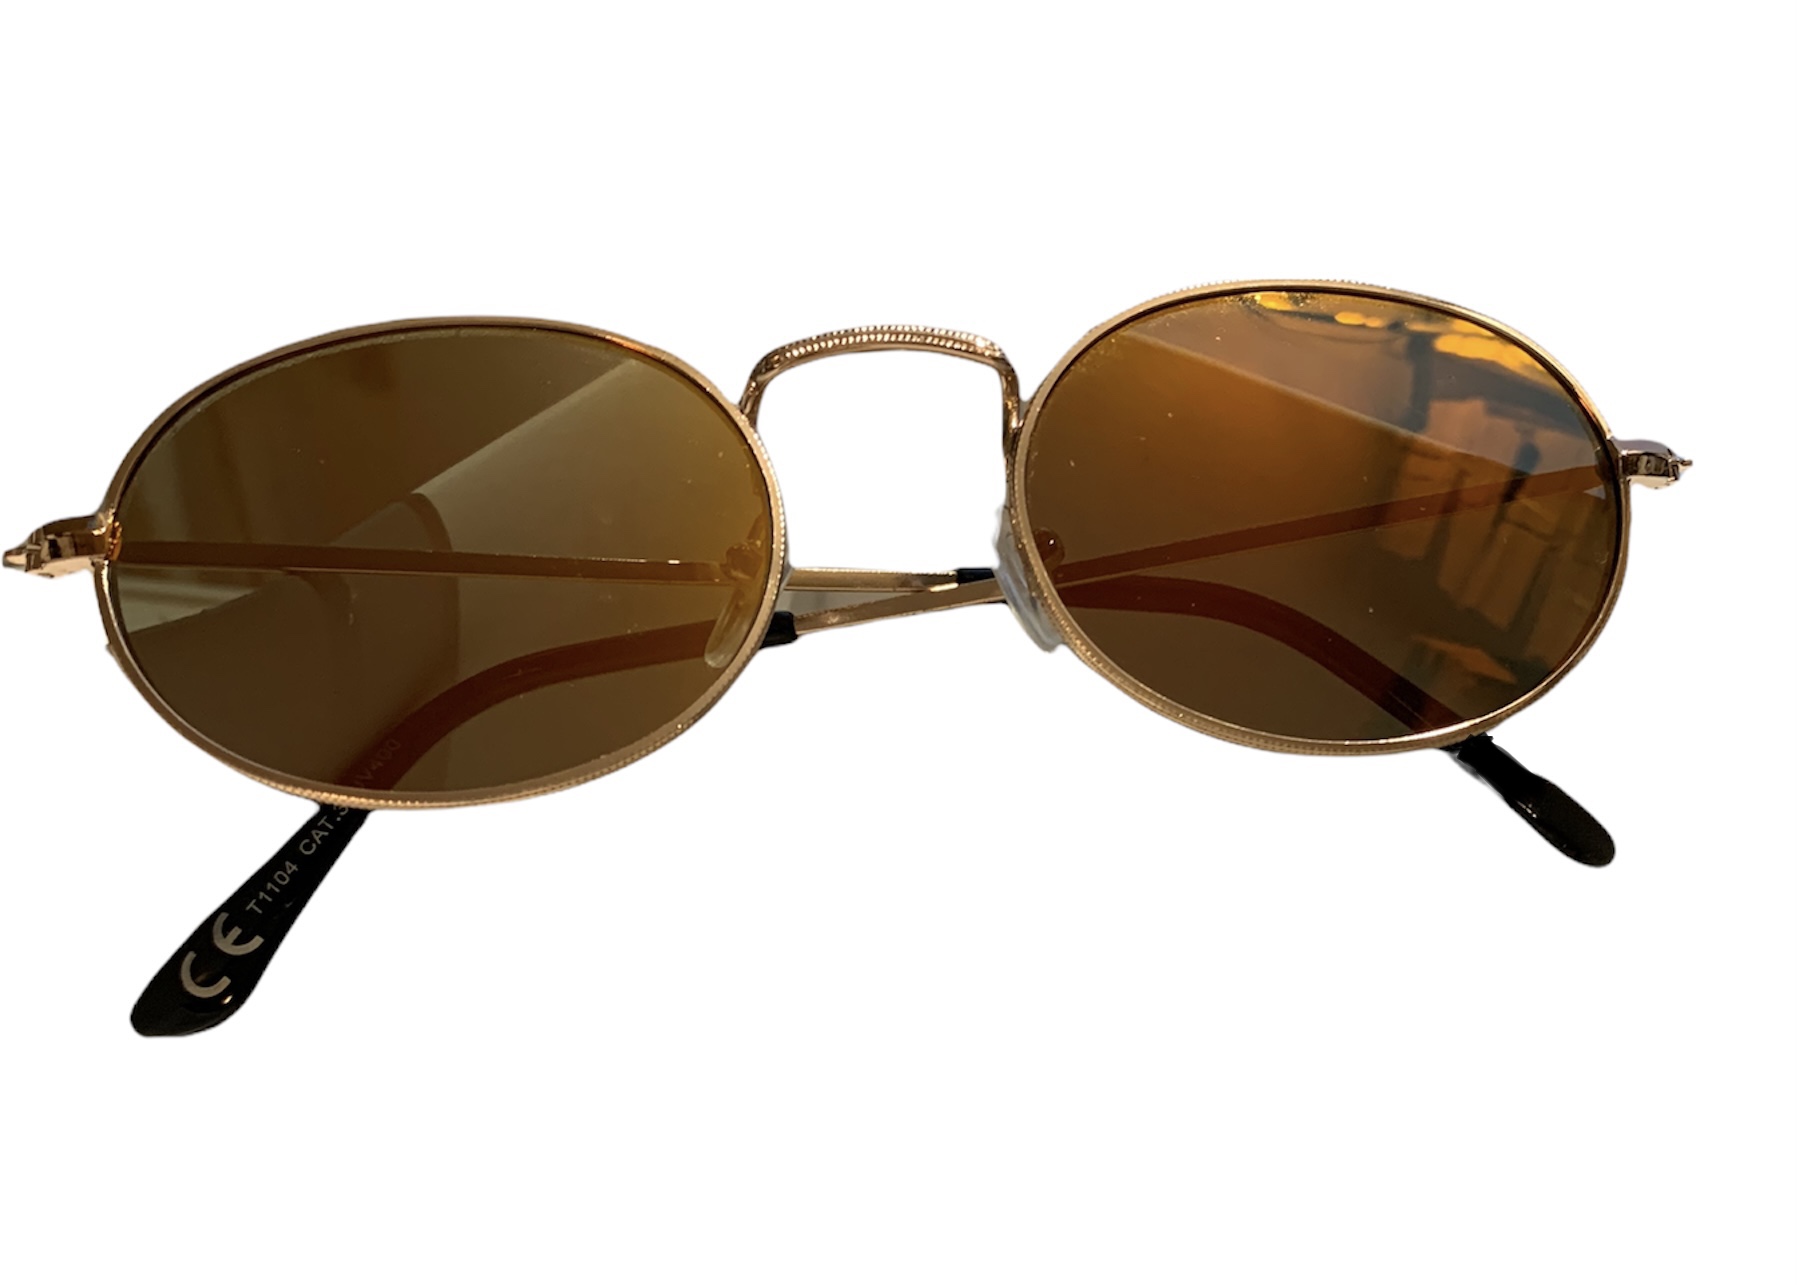 Solbriller Ovale glas - Guld-Orange SOLBRILLER - Znoopy.dk